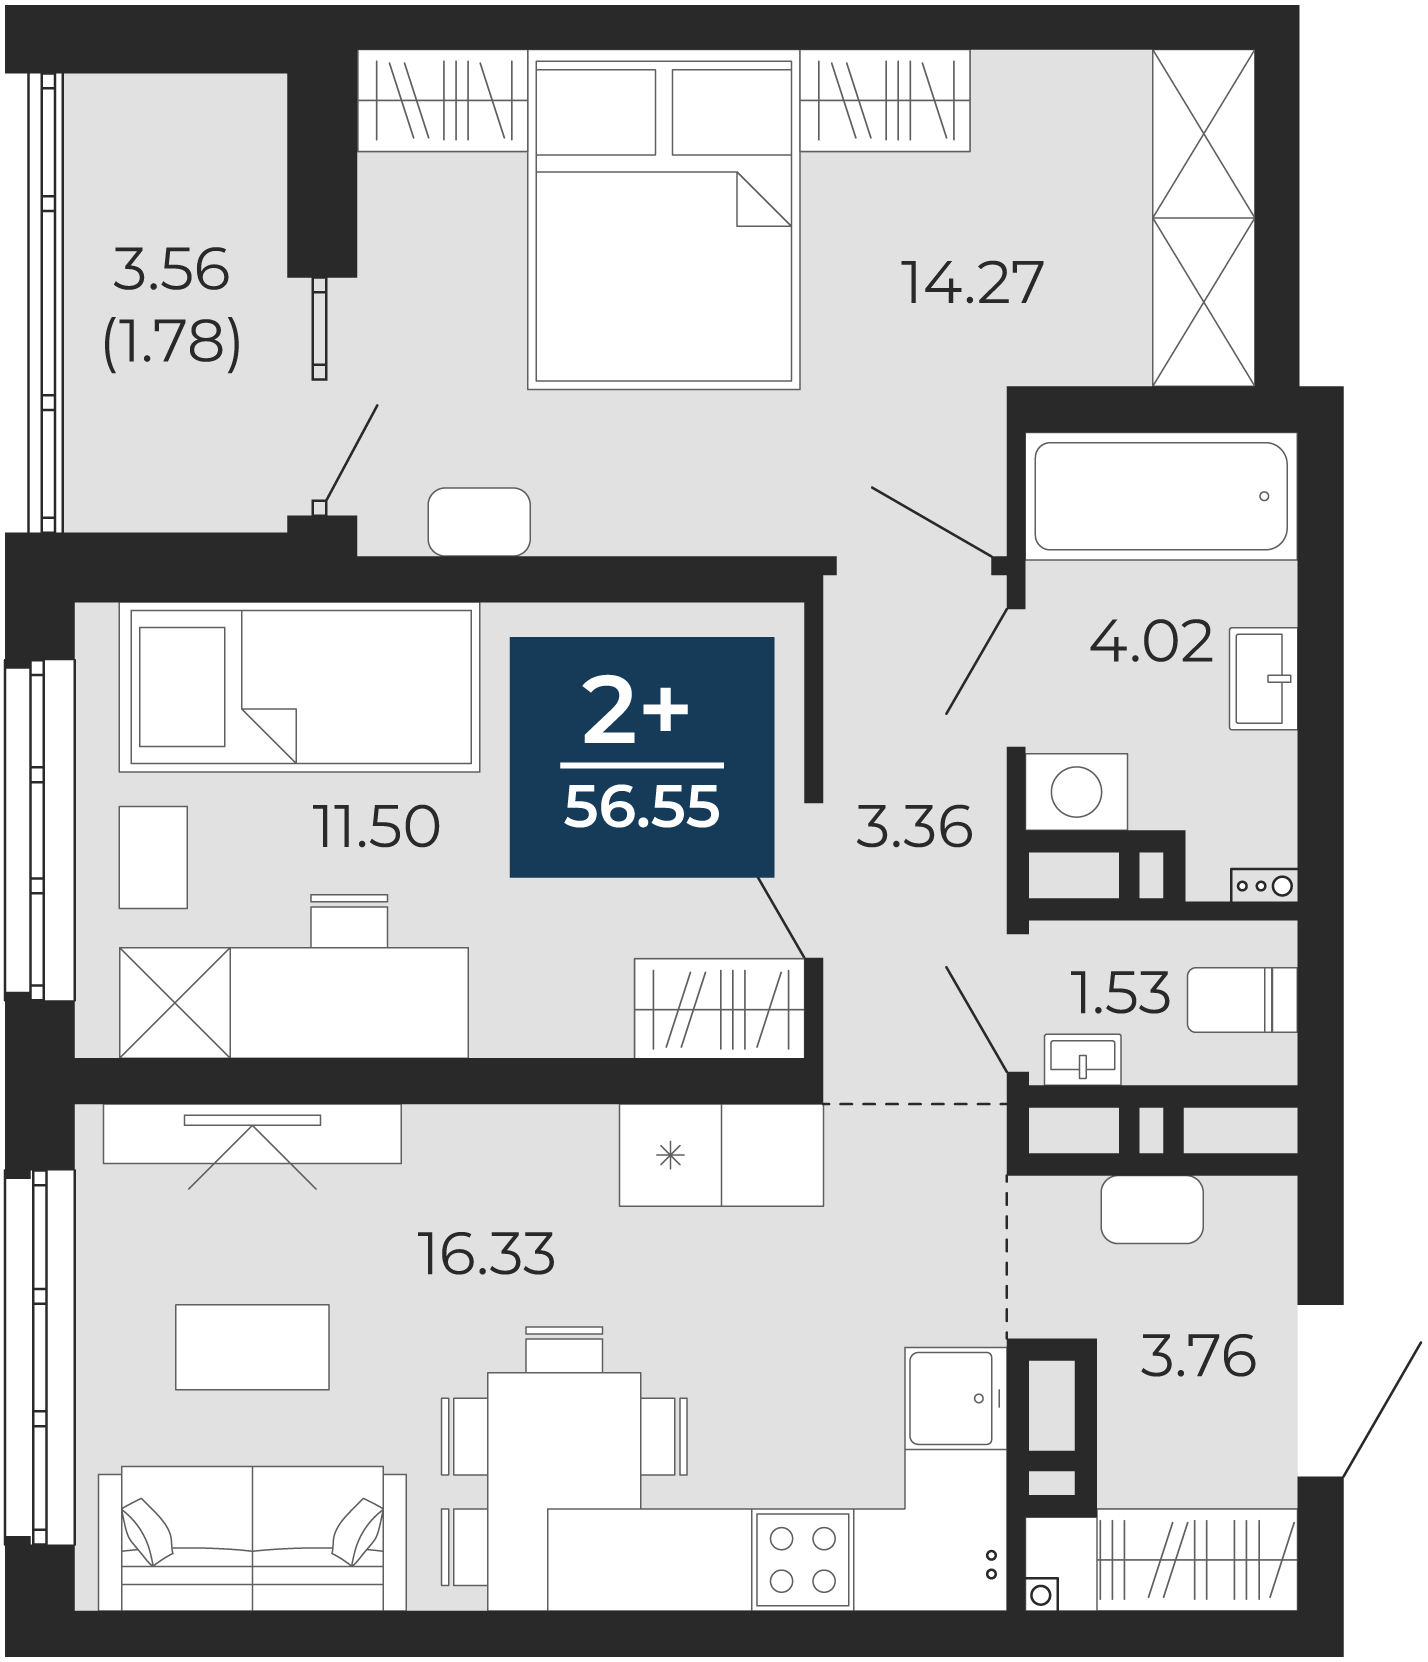 Квартира № 128, 2-комнатная, 56.55 кв. м, 4 этаж